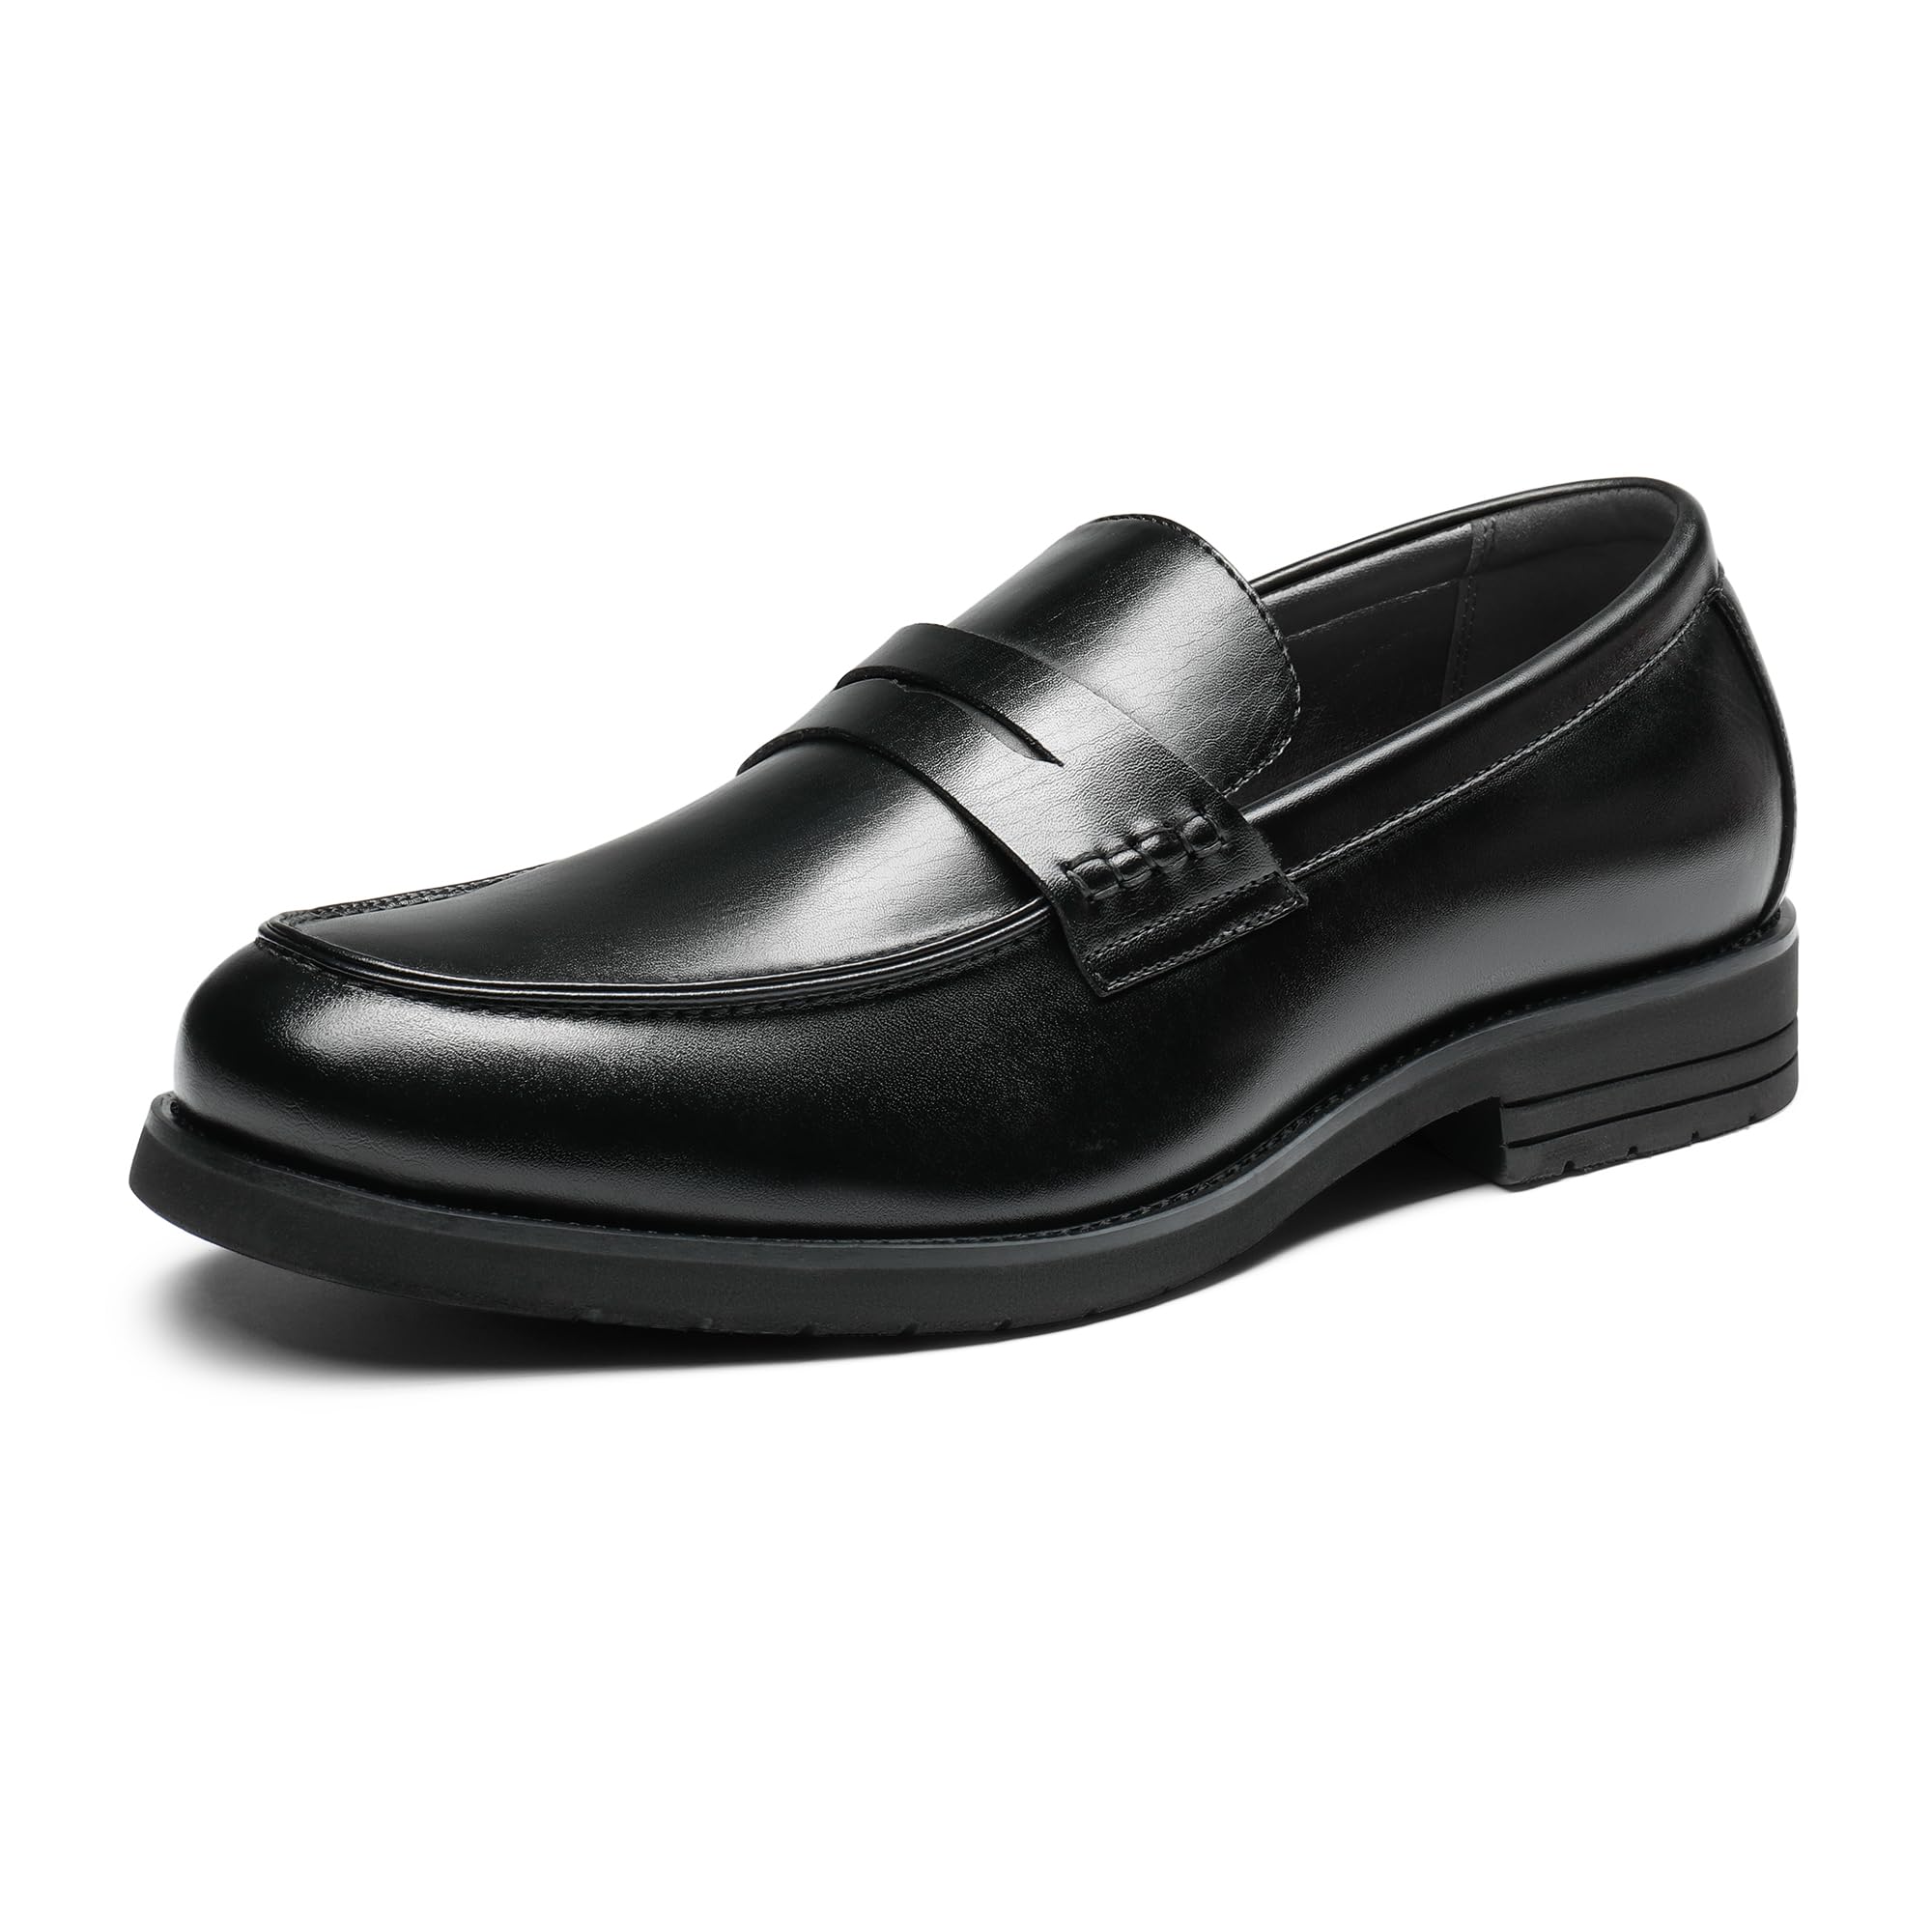 Bruno Marc Men's Dress Slip-on Penny Loafers Business Formal Shoes